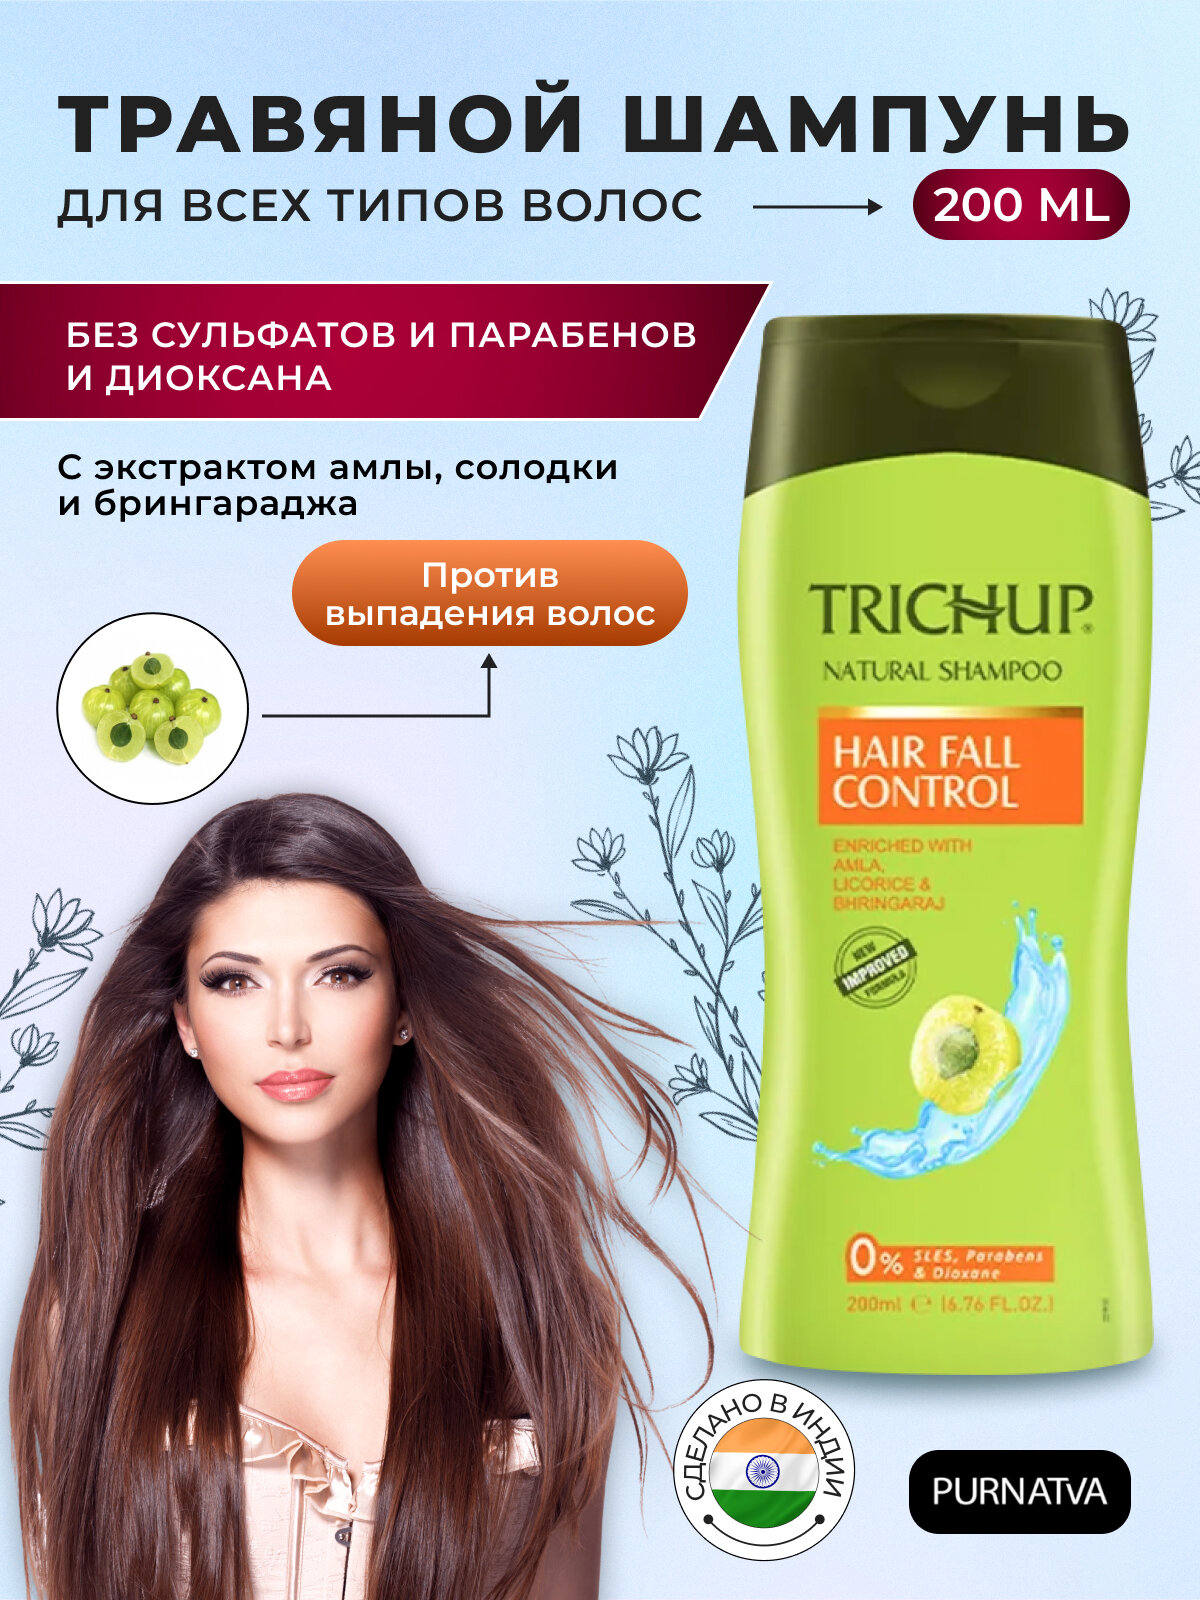 Hair Fall Control / Тричап, Натуральный шампунь против выпадения волос, 200 мл